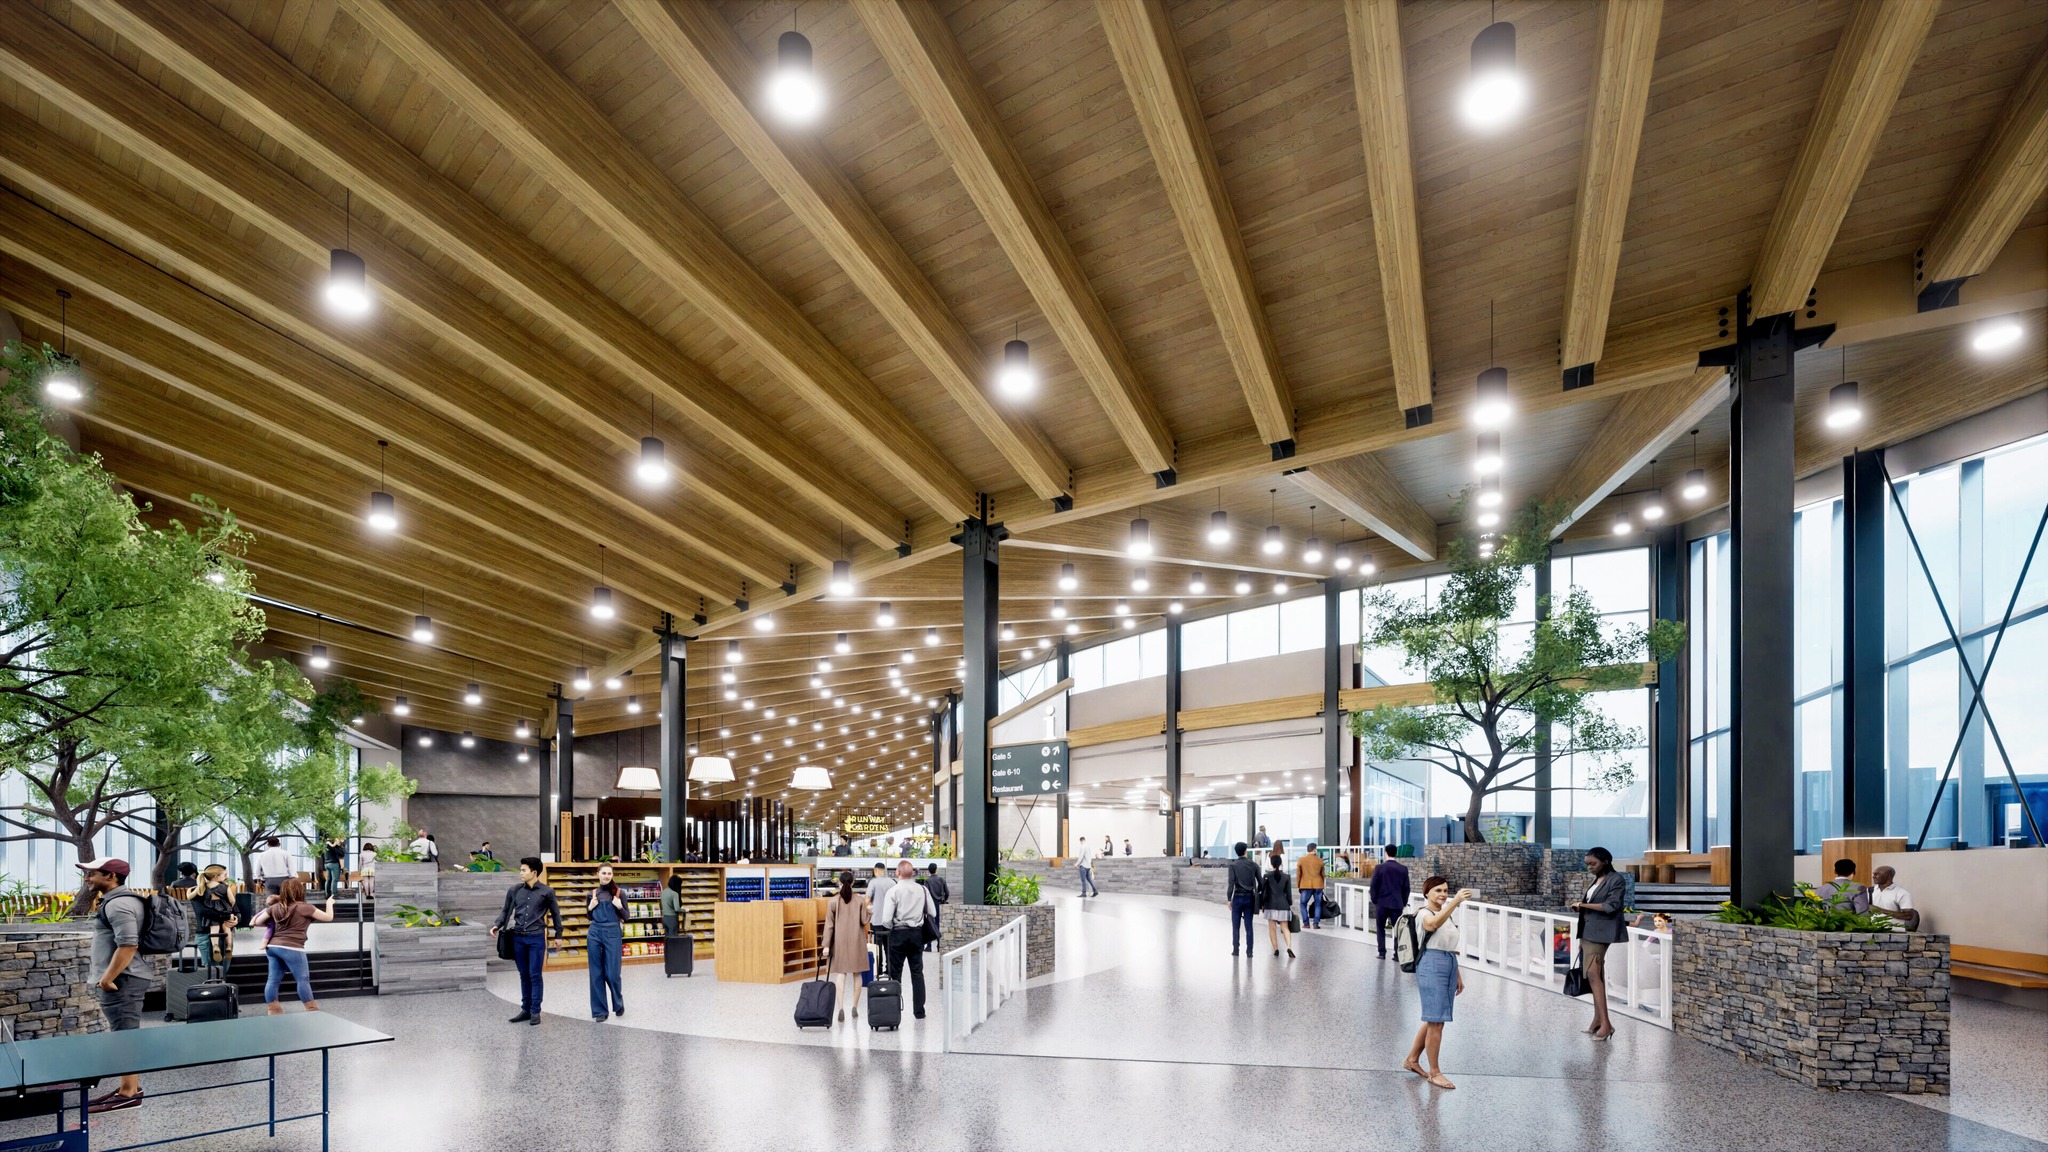 Airport expansion concept art